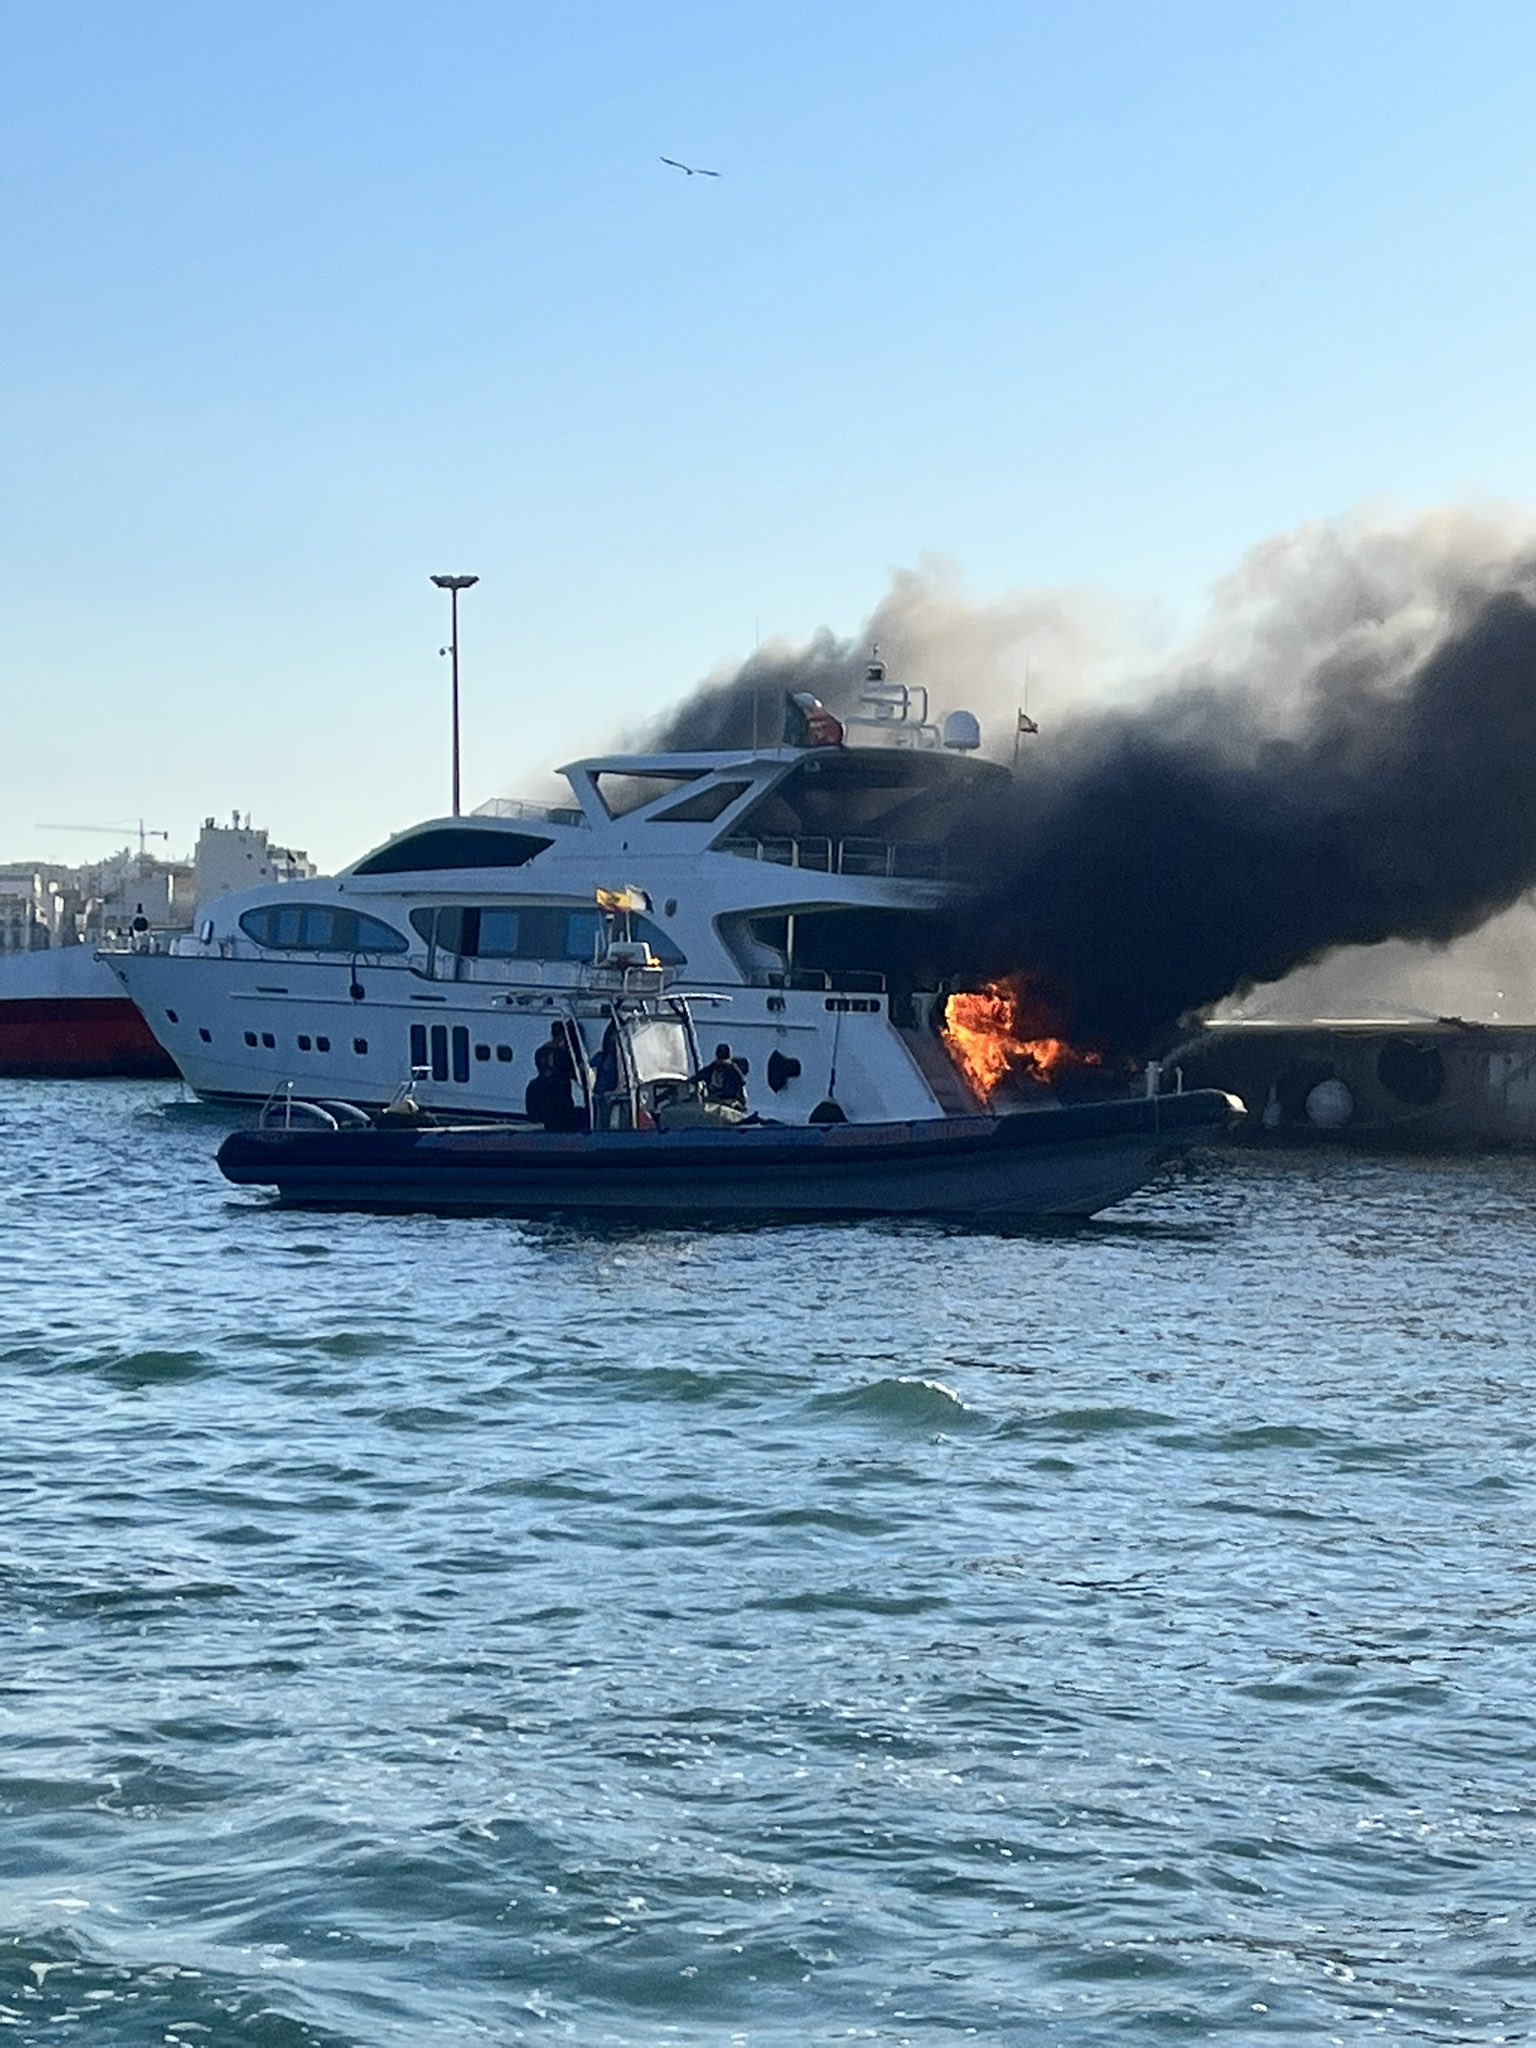 luxury yacht fire